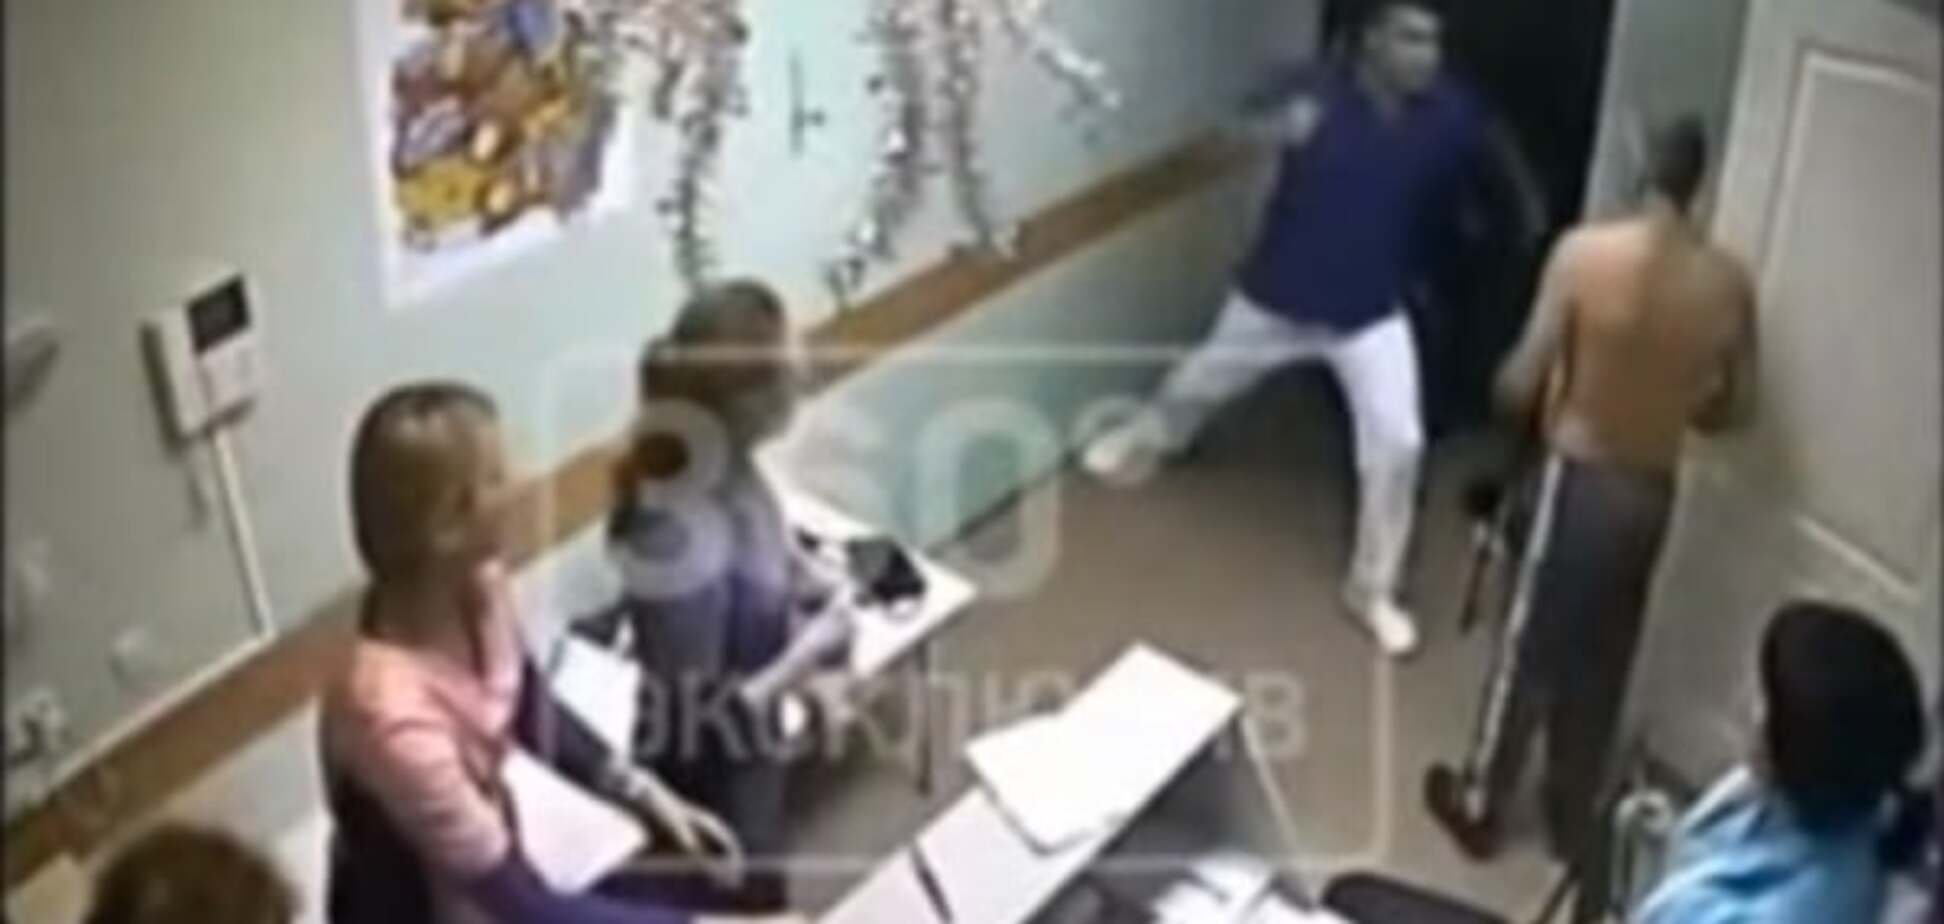 СМИ: в России врач одним ударом убил пациента - видео 18+